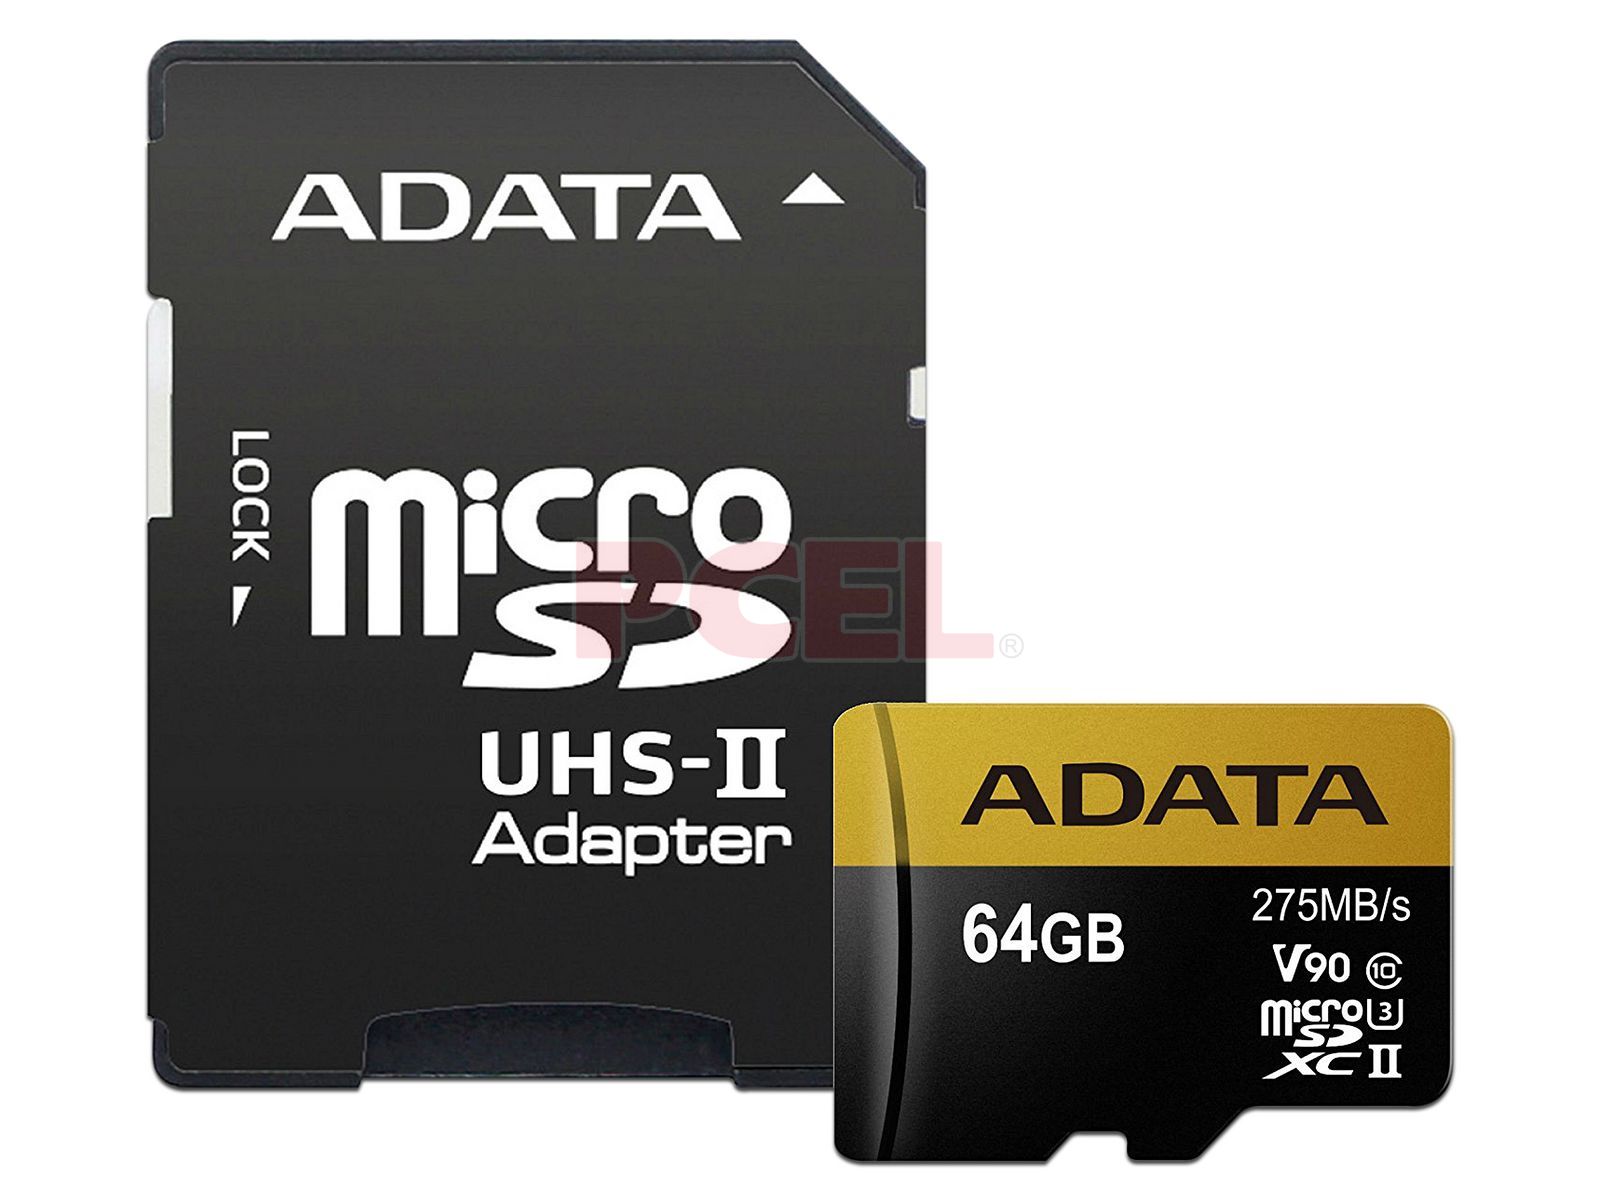 Memoria MicroSDXC UHS-1 ADATA Premier de 64GB, Clase 10, incluye